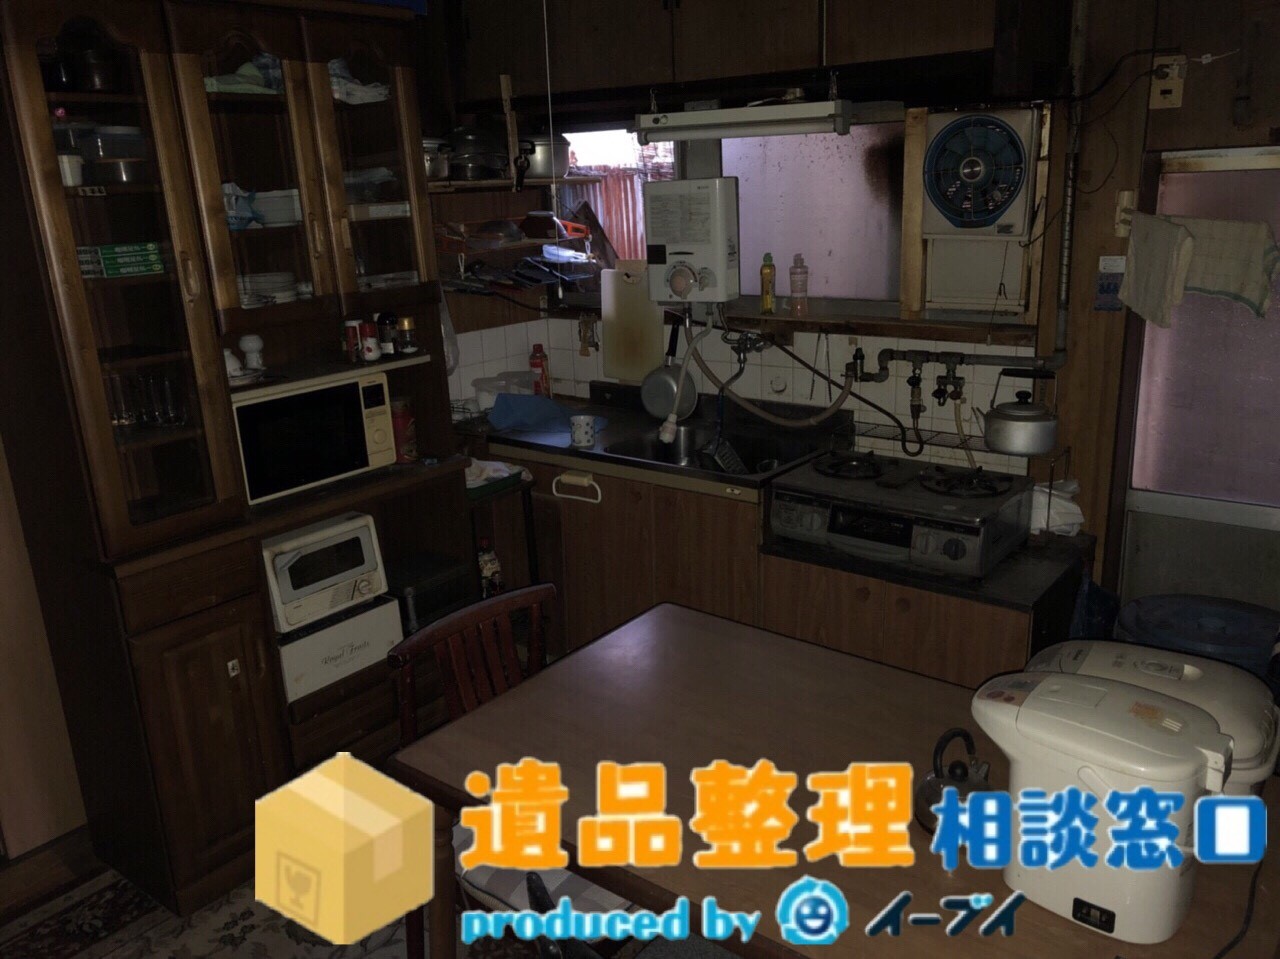 大阪府大阪市でキッチンの片付けや家電処分の遺品整理作業。のアイキャッチ